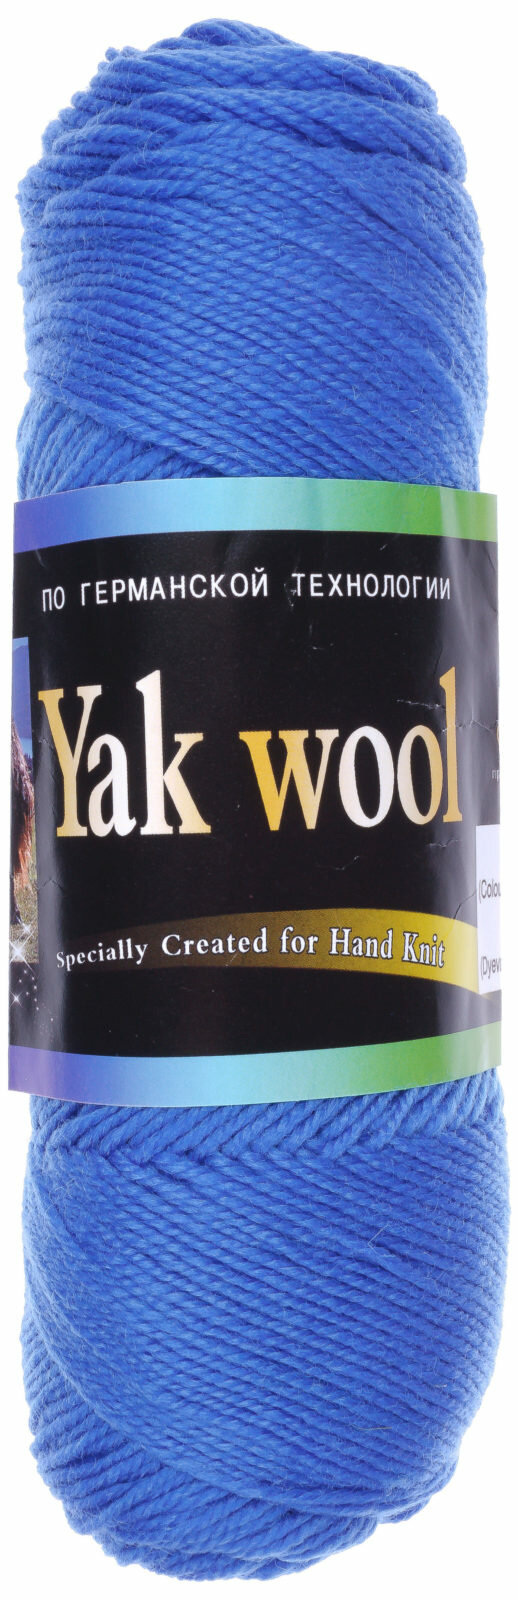 Пряжа Color City Yak wool 60%пух яка/20%мериносовая шерсть/20%акрил 430м 100г 1шт